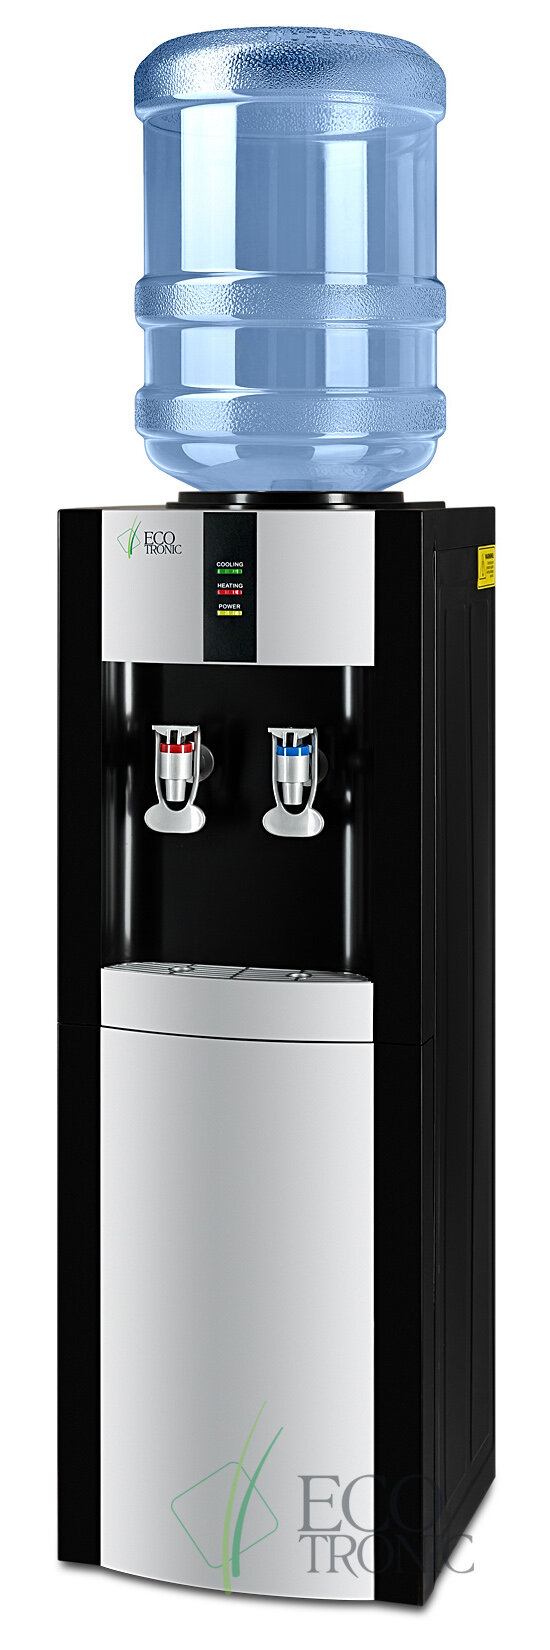 Кулер для воды Ecotronic H1-LF Black напольный с холодильником